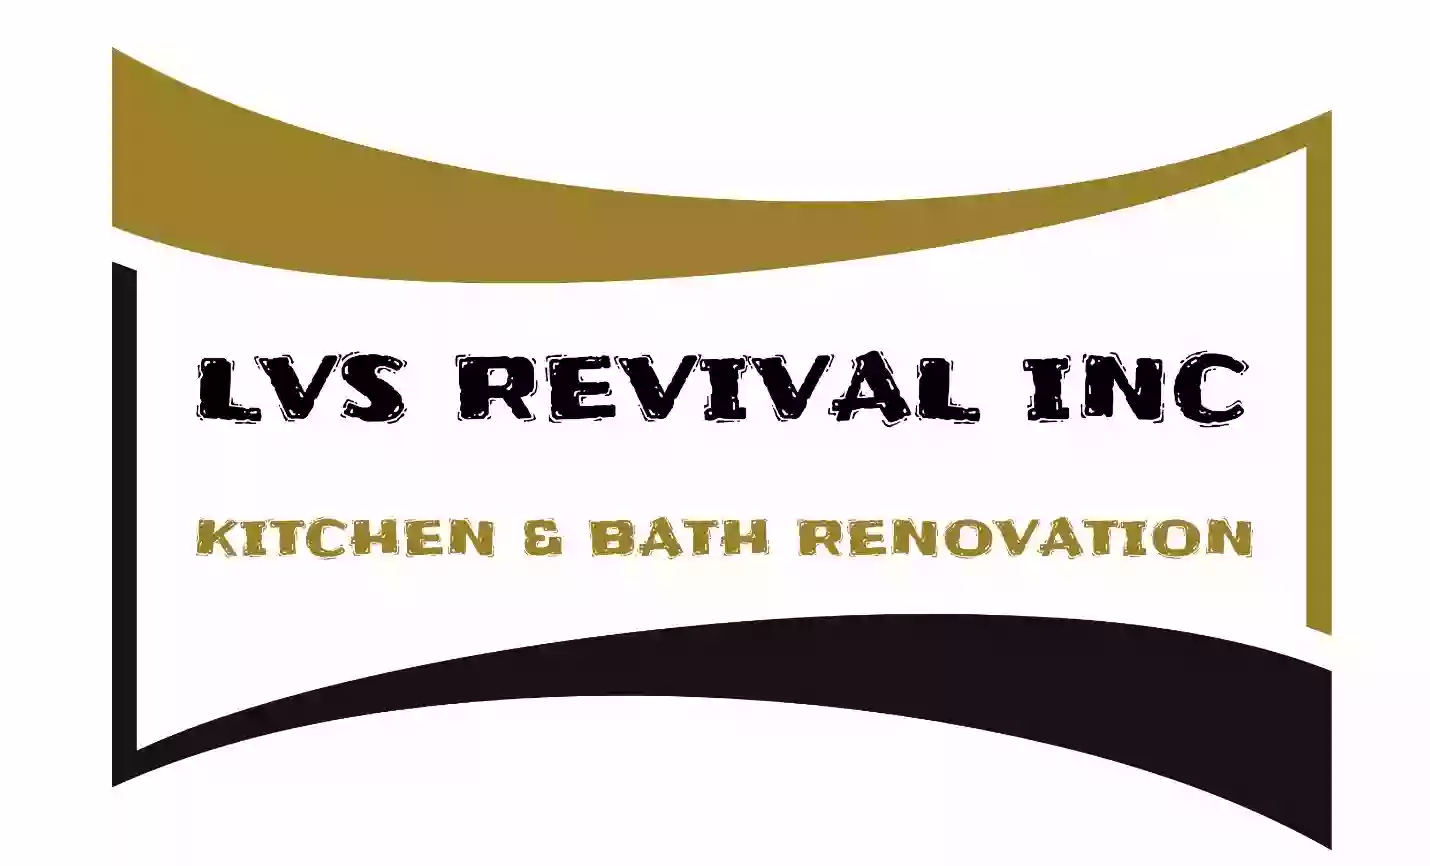 LVS Revival Inc